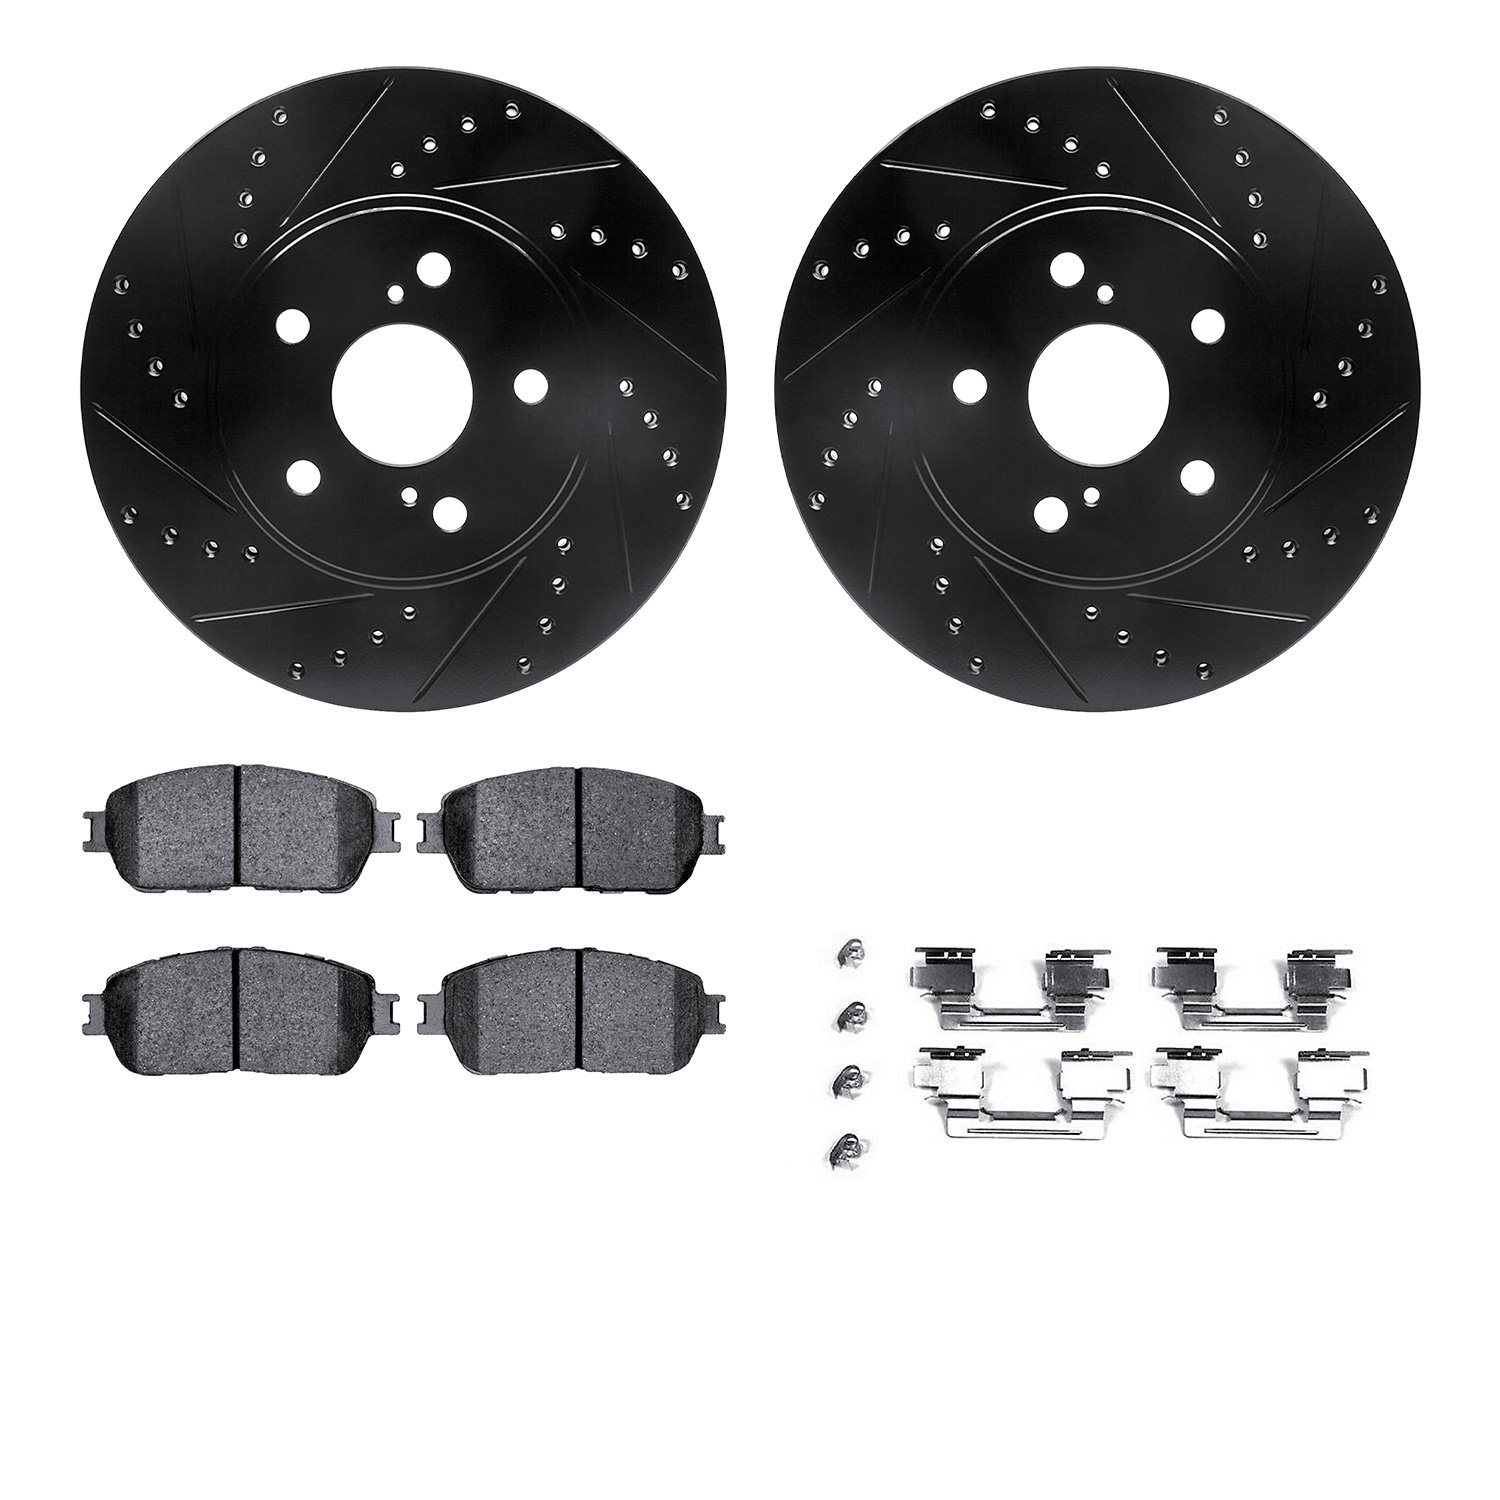 8312-76137 Drilled/Slotted Brake Rotors with 3000-Series Ceramic Brake Pads Kit & Hardware [Black], 2004-2010 Lexus/Toyota/Scion